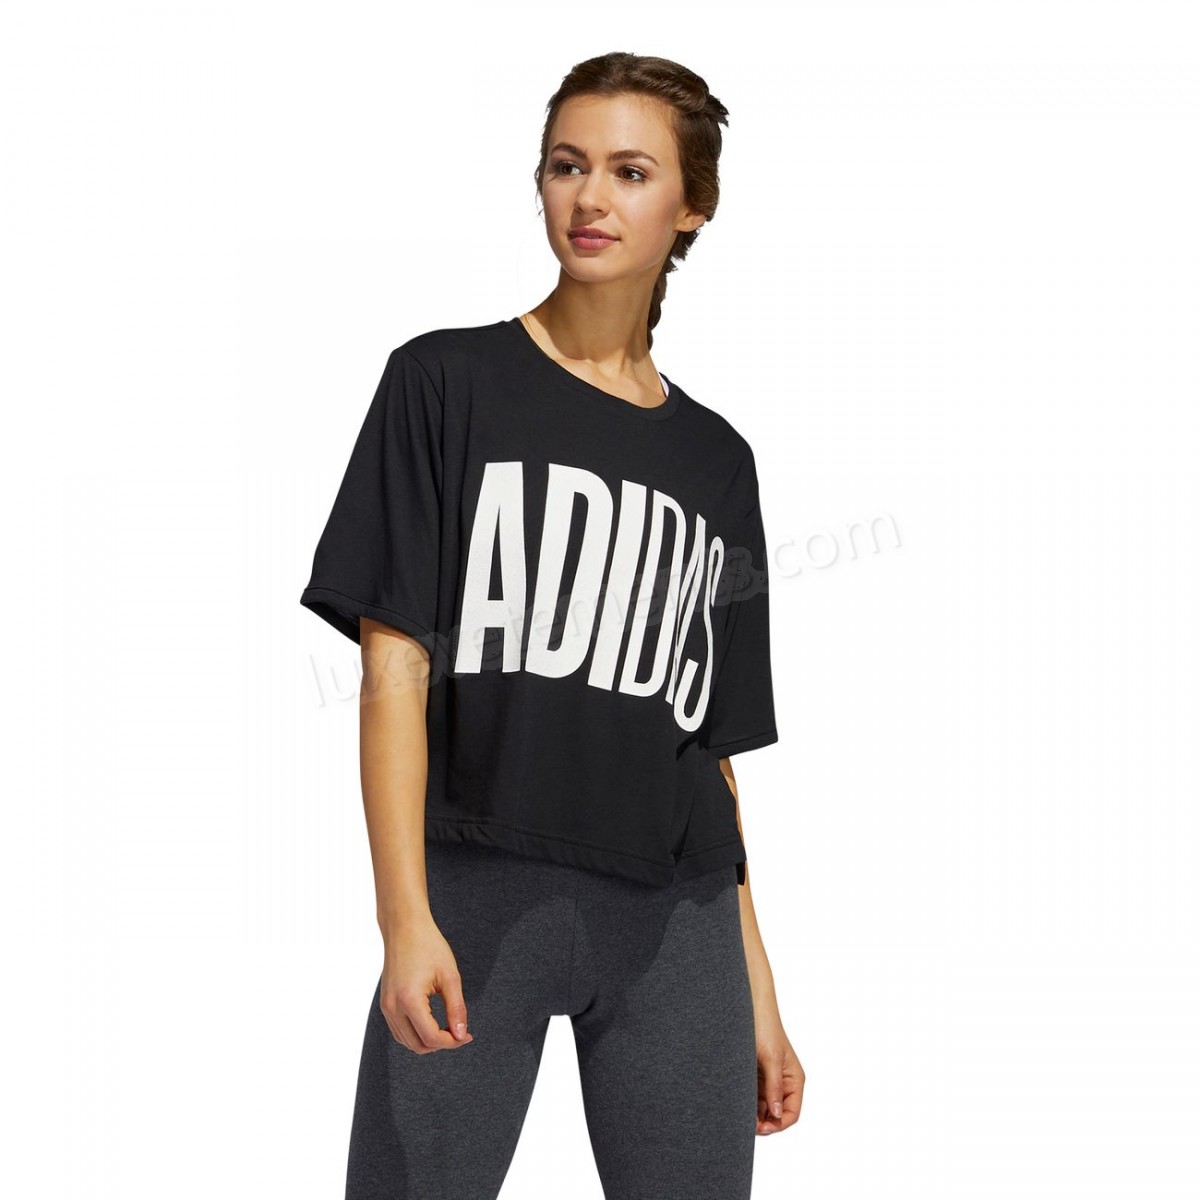 Adidas-Mode- Lifestyle femme ADIDAS Adidas Univ 1 Vente en ligne - -3